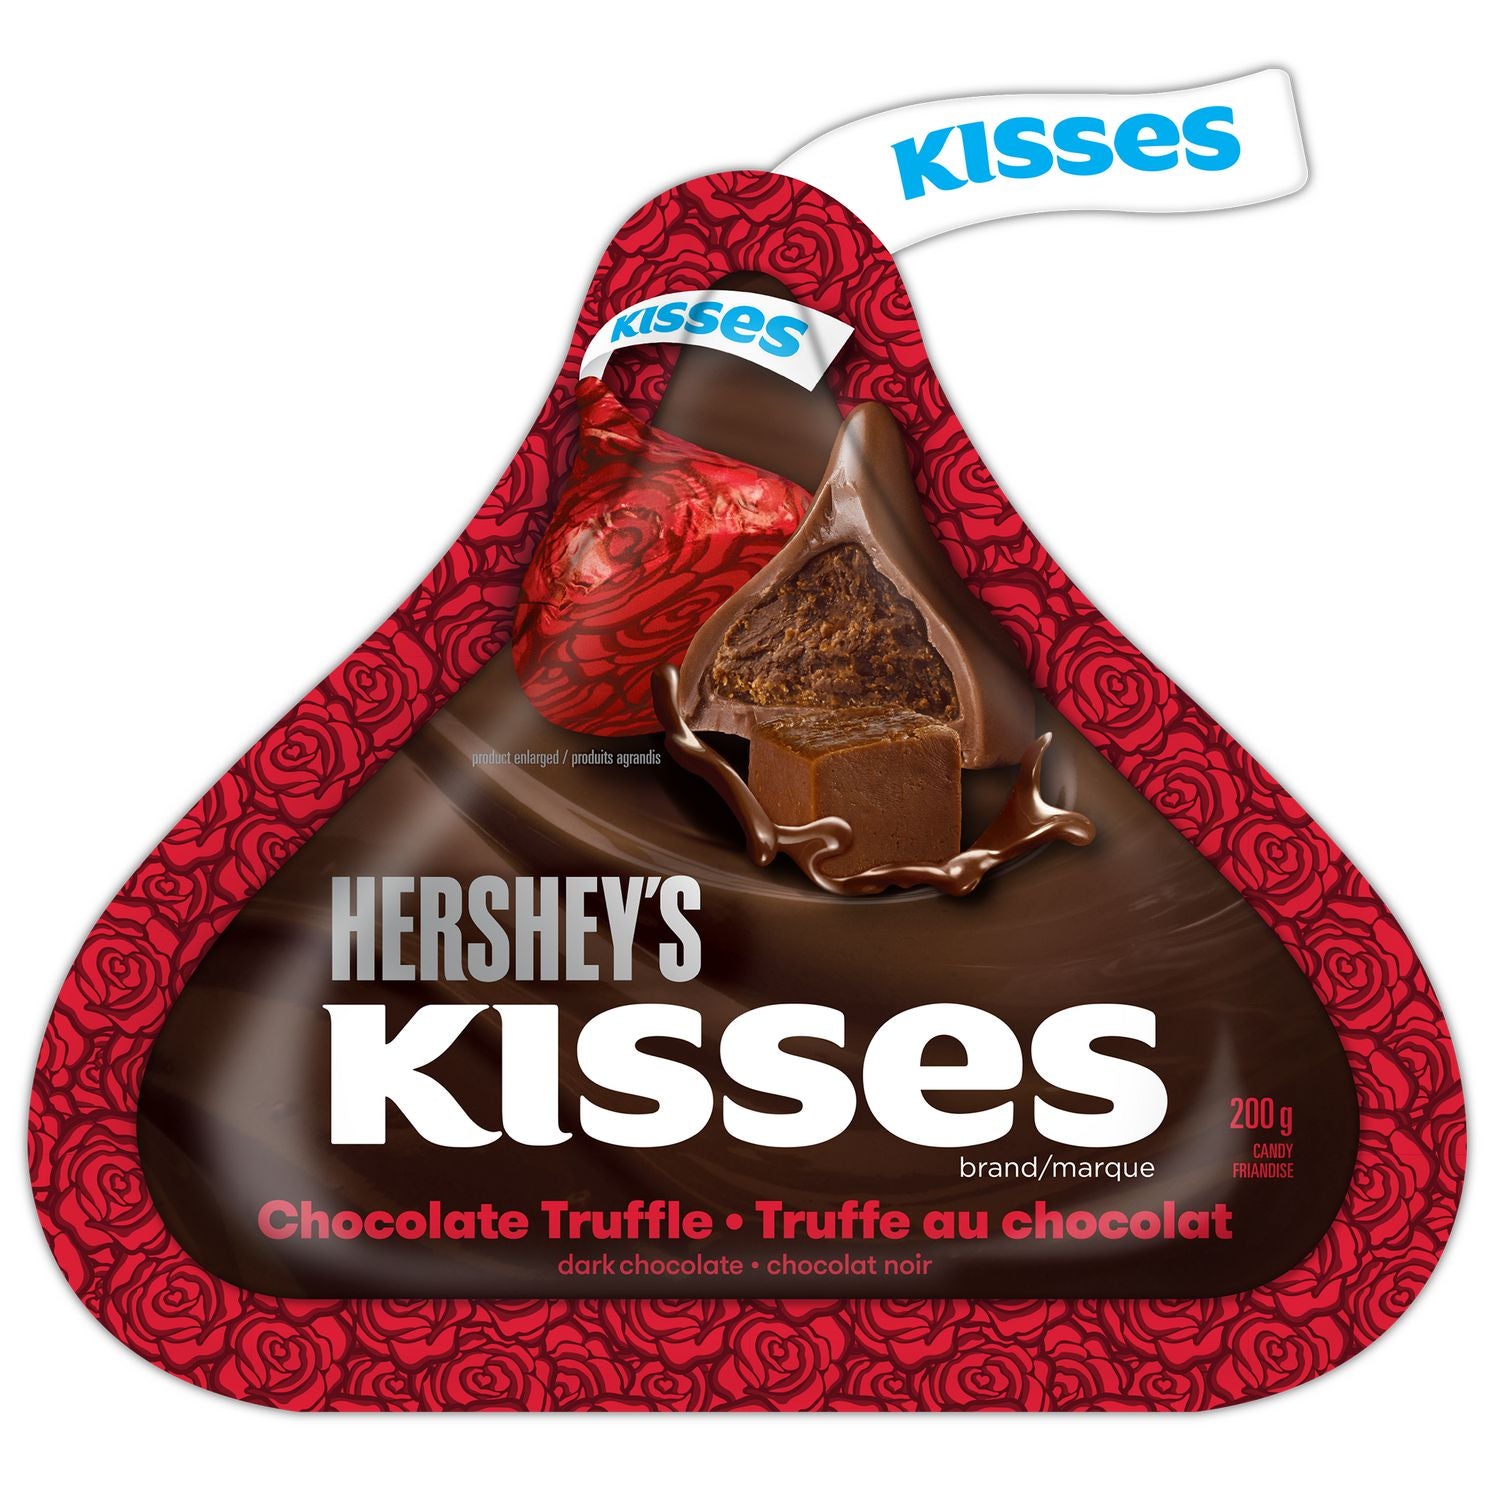 Hershey's Kisses Chocolate Truffle